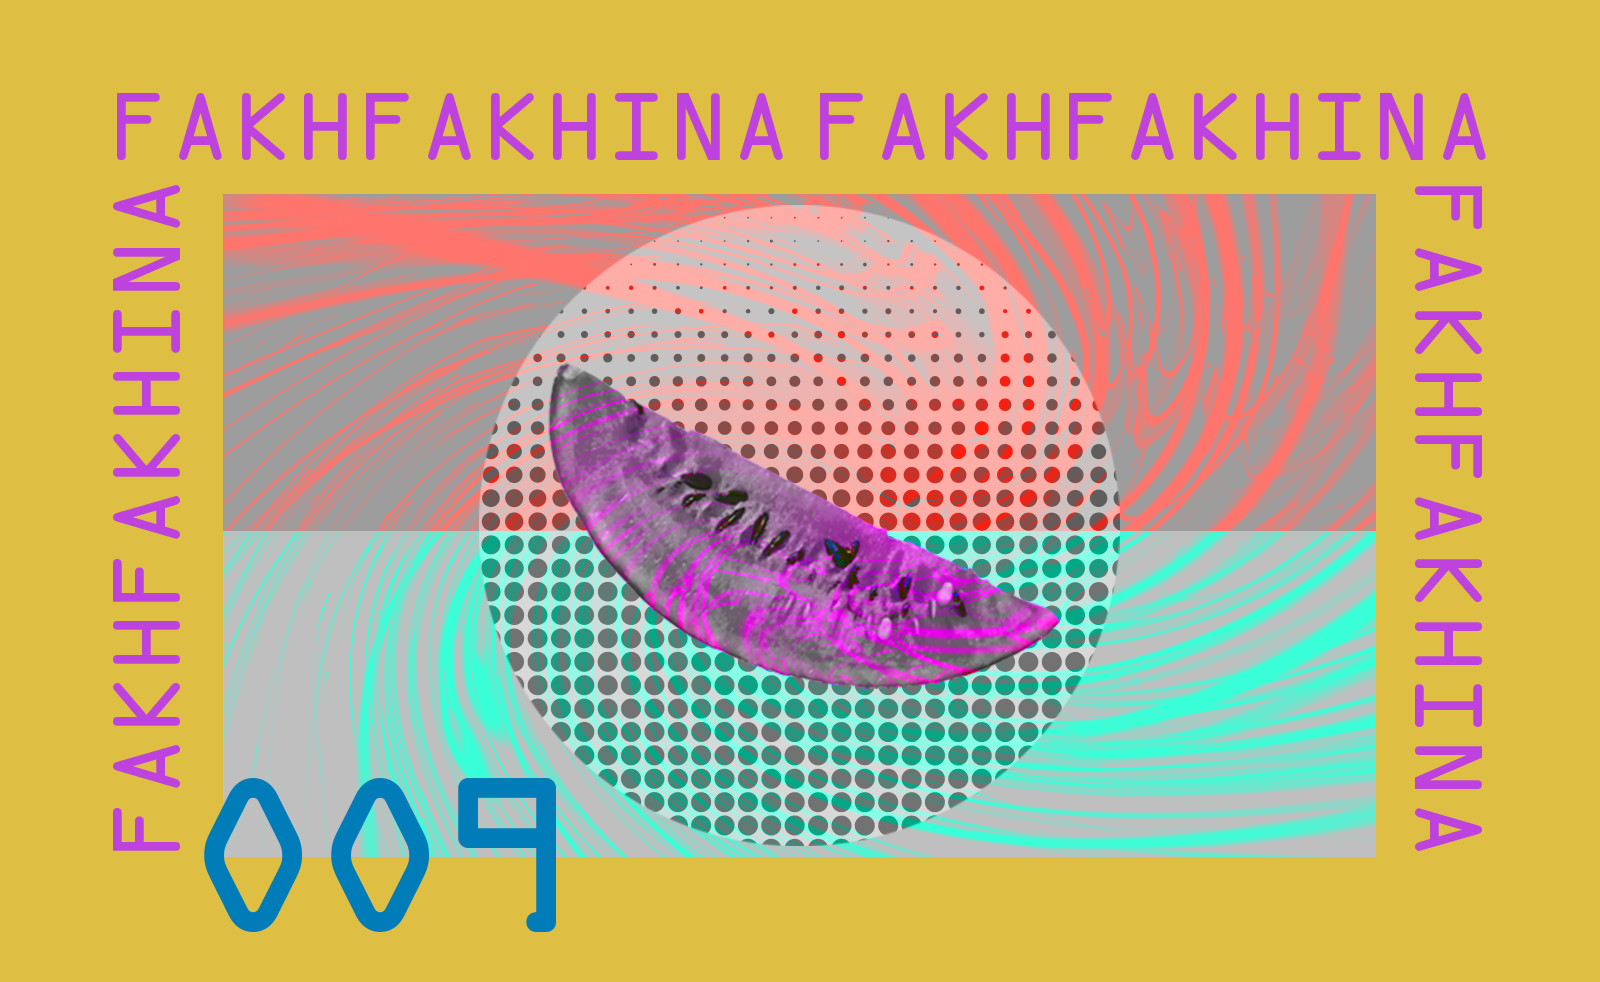 Fakhfakhina 009